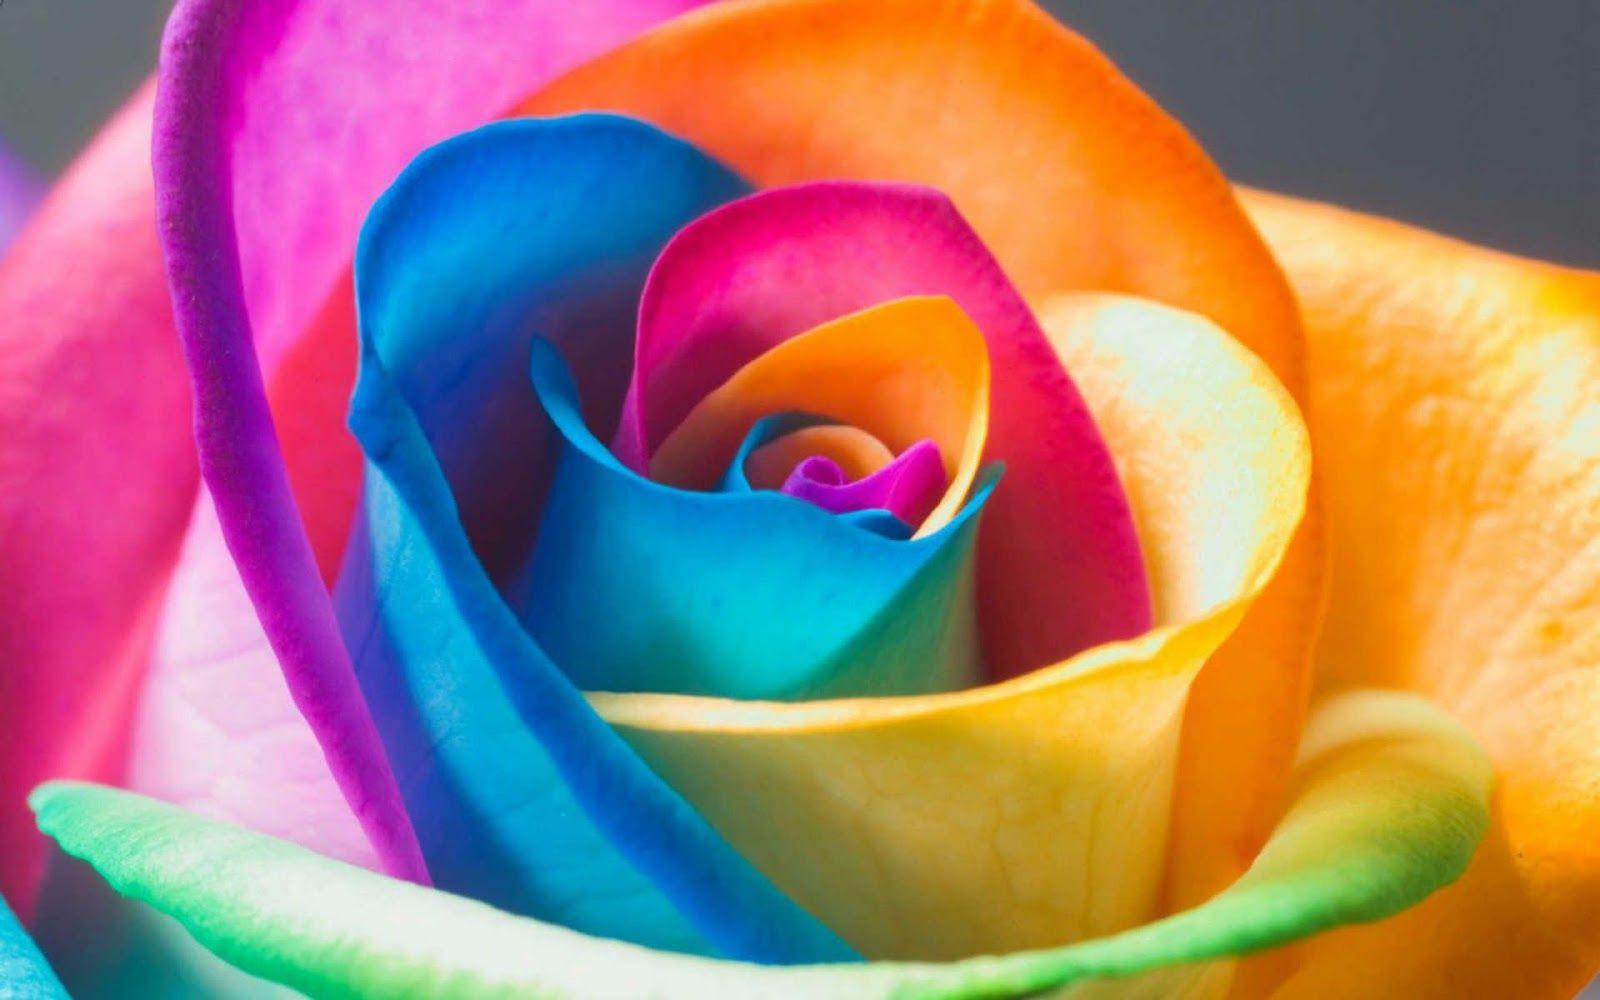 gousicteco: Neon Rainbow Roses Wallpaper Image